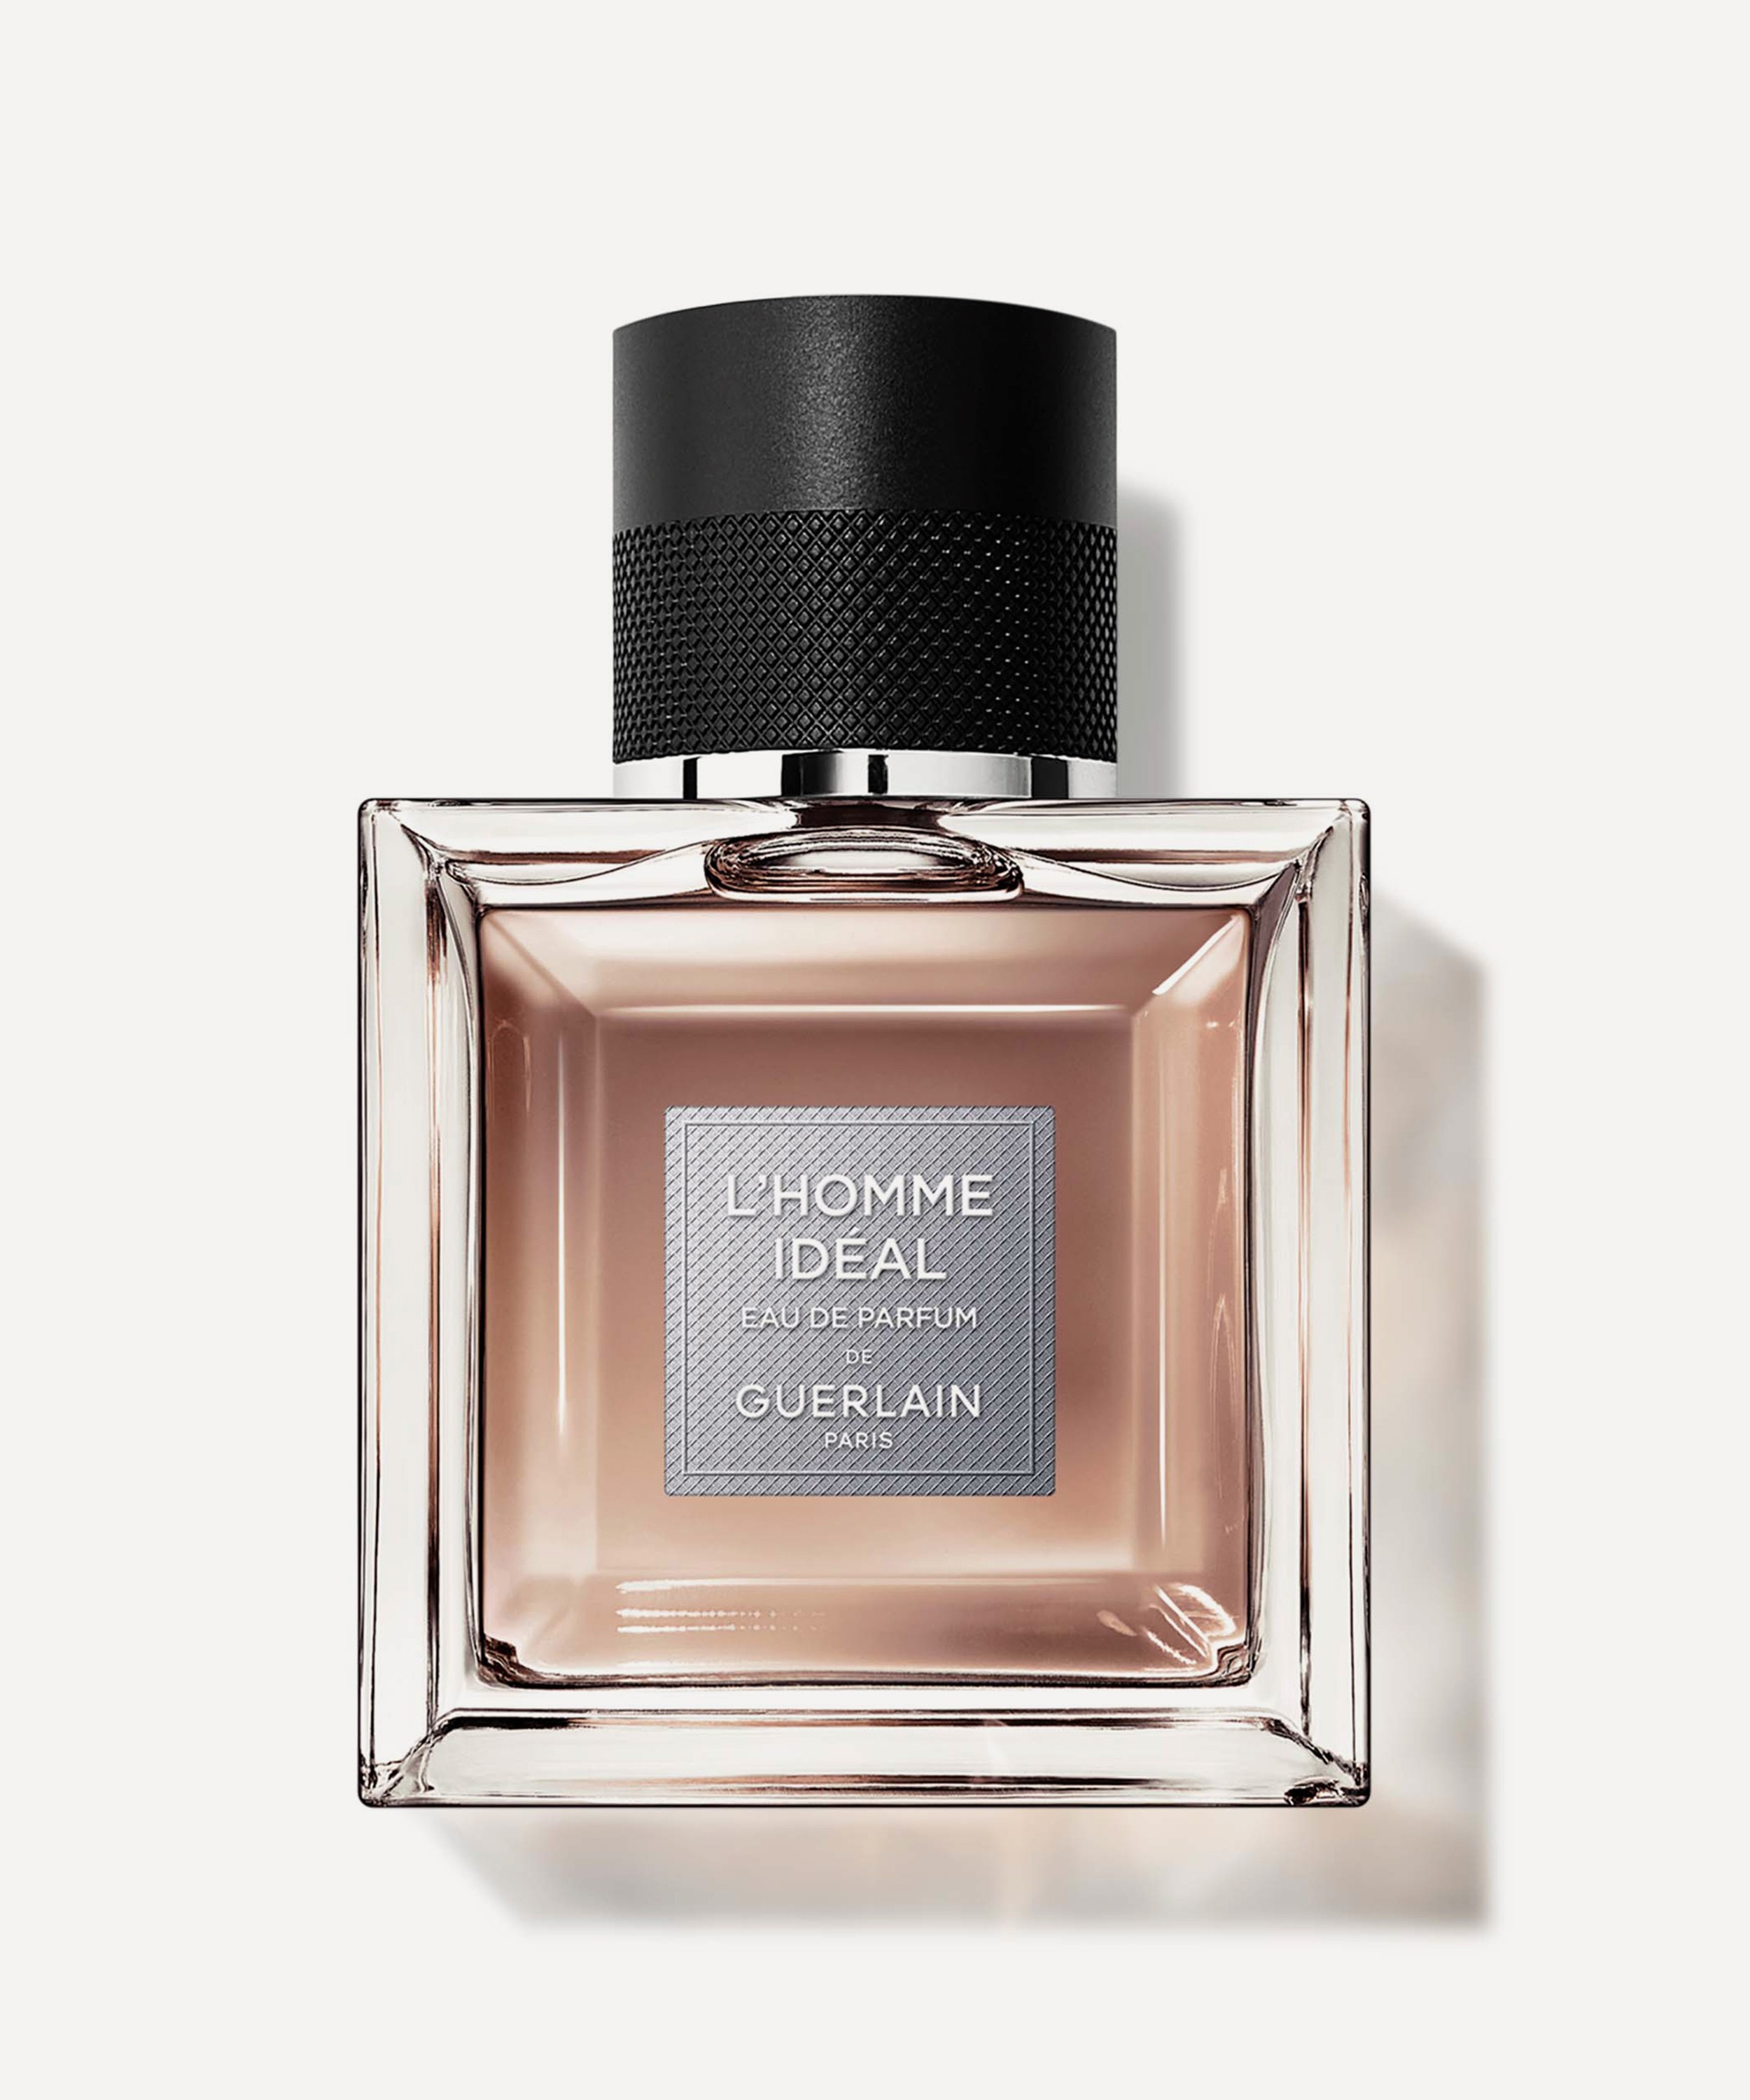 Guerlain - L'Homme Idéal Eau de Parfum 50ml